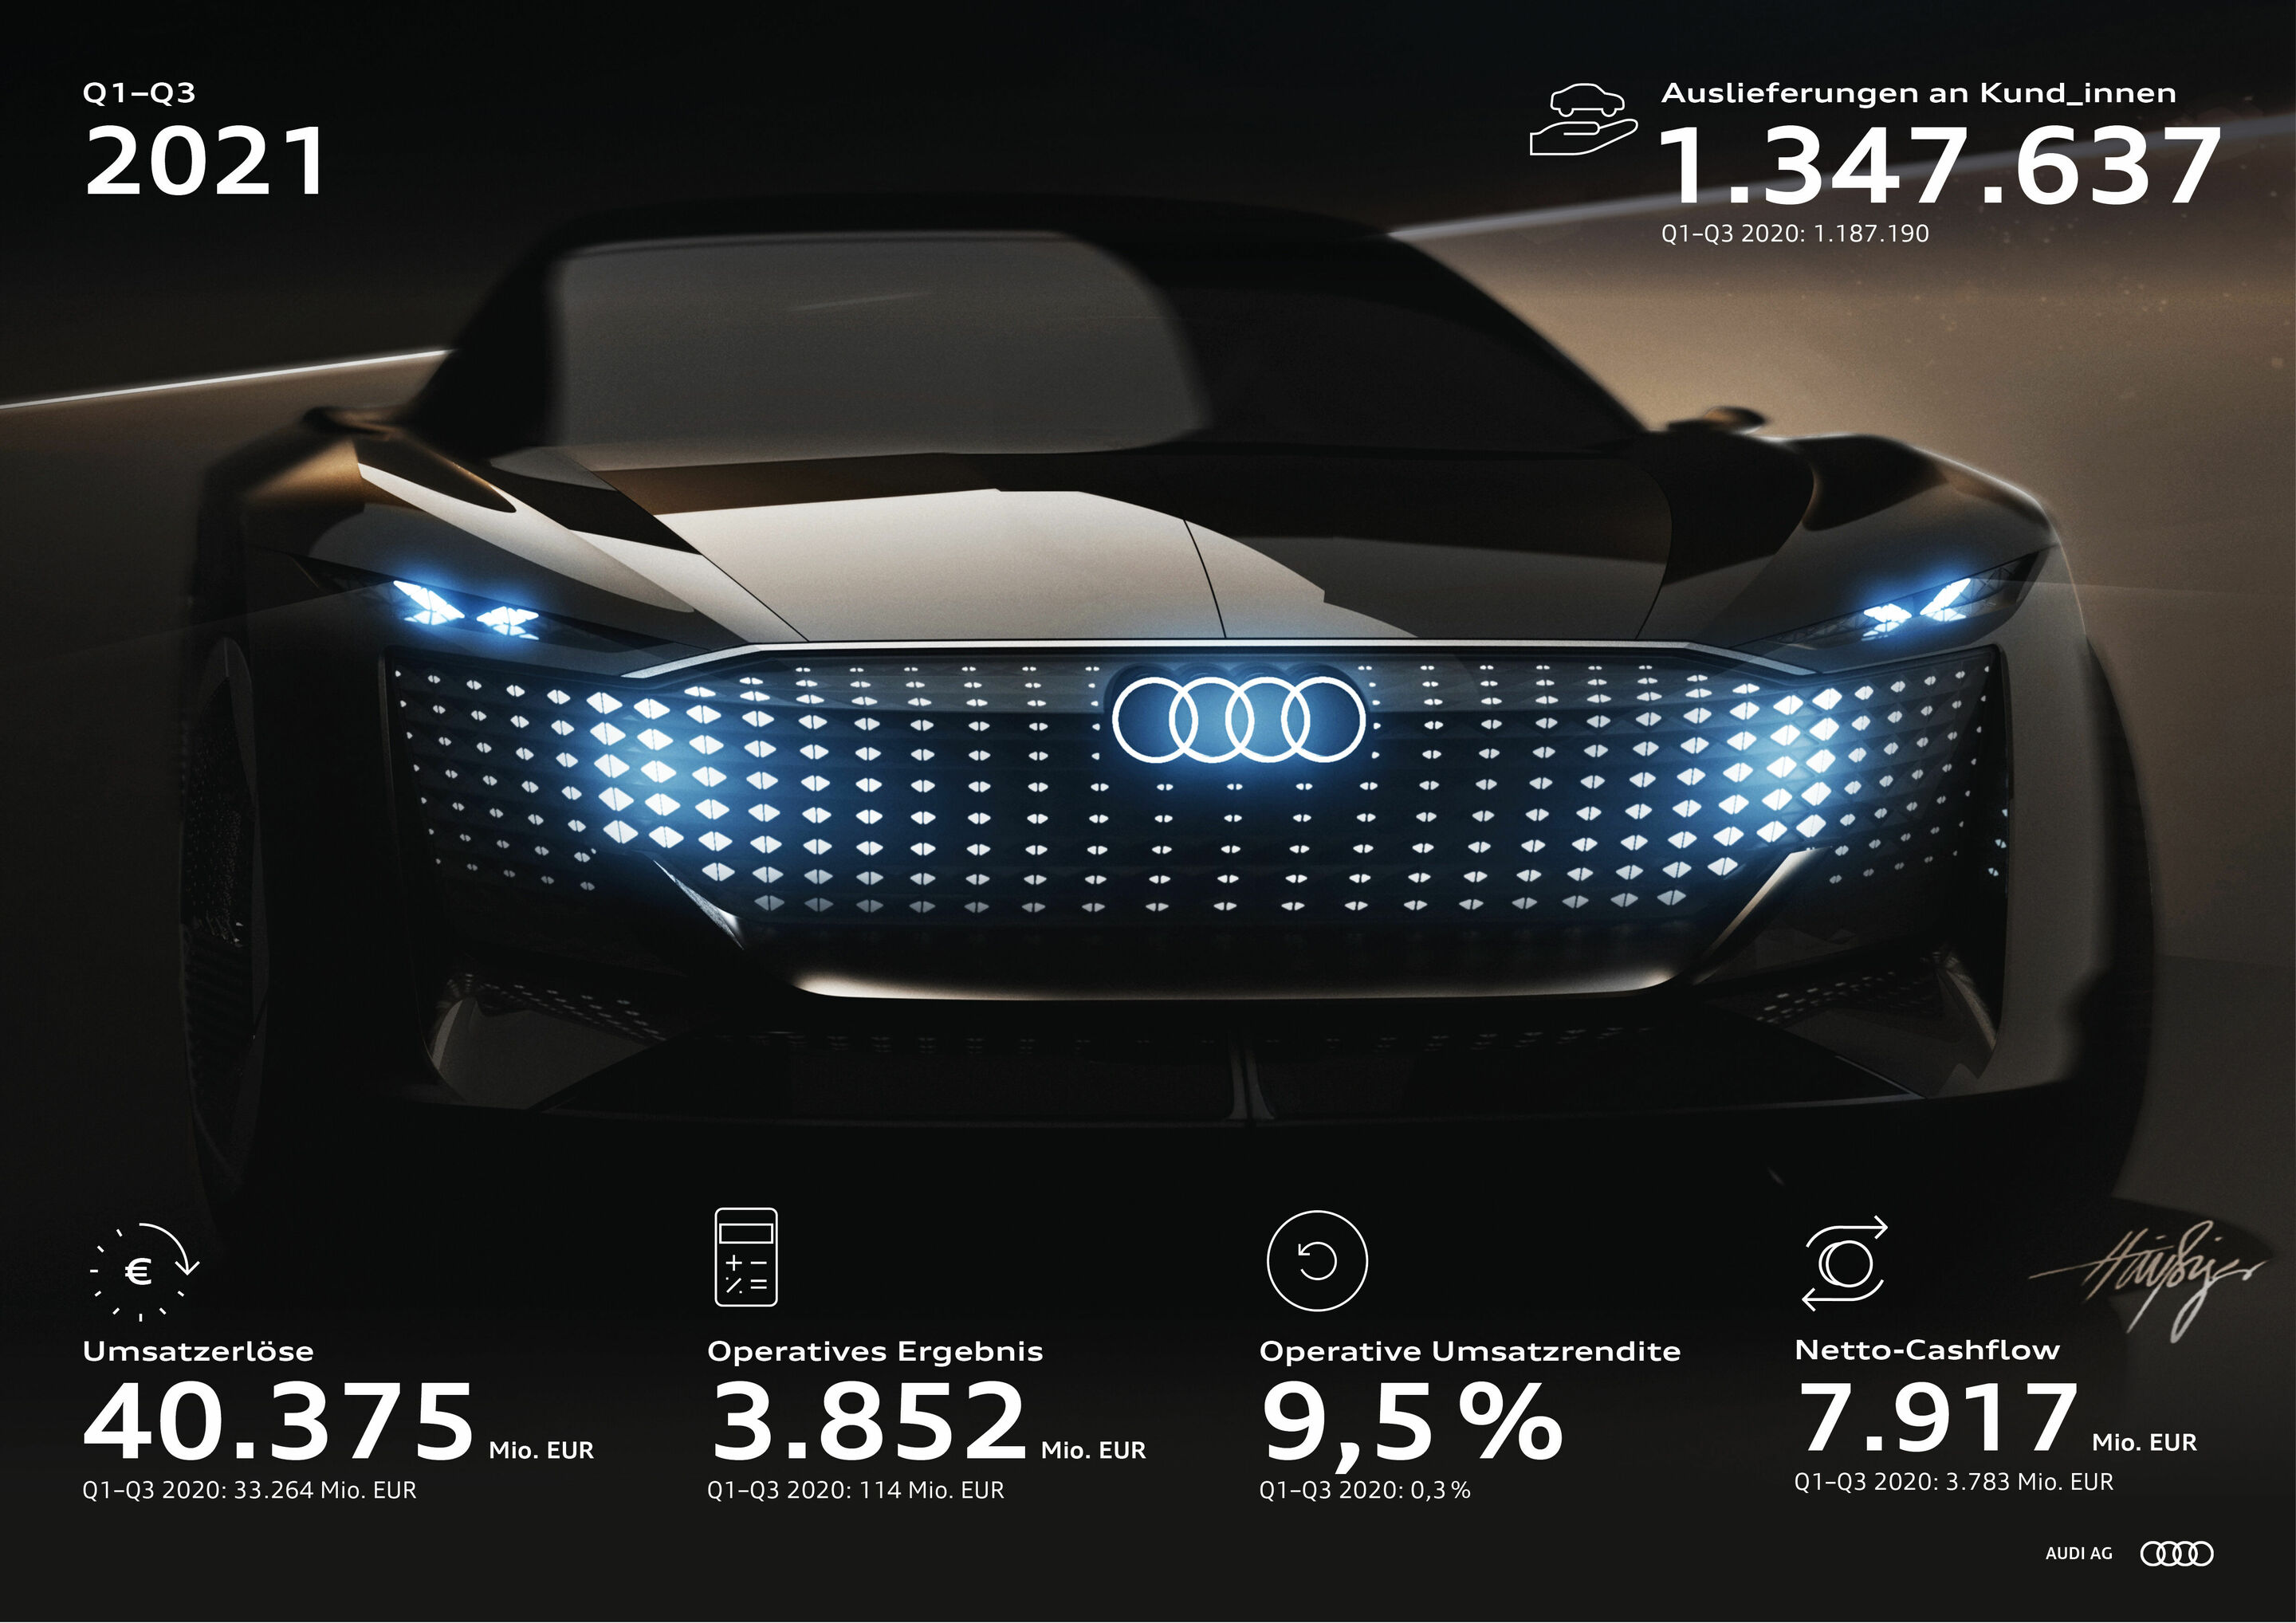 Audi-Konzern trotz Halbleiterkrise mit starker Rendite – Prognose für 2021 angepasst